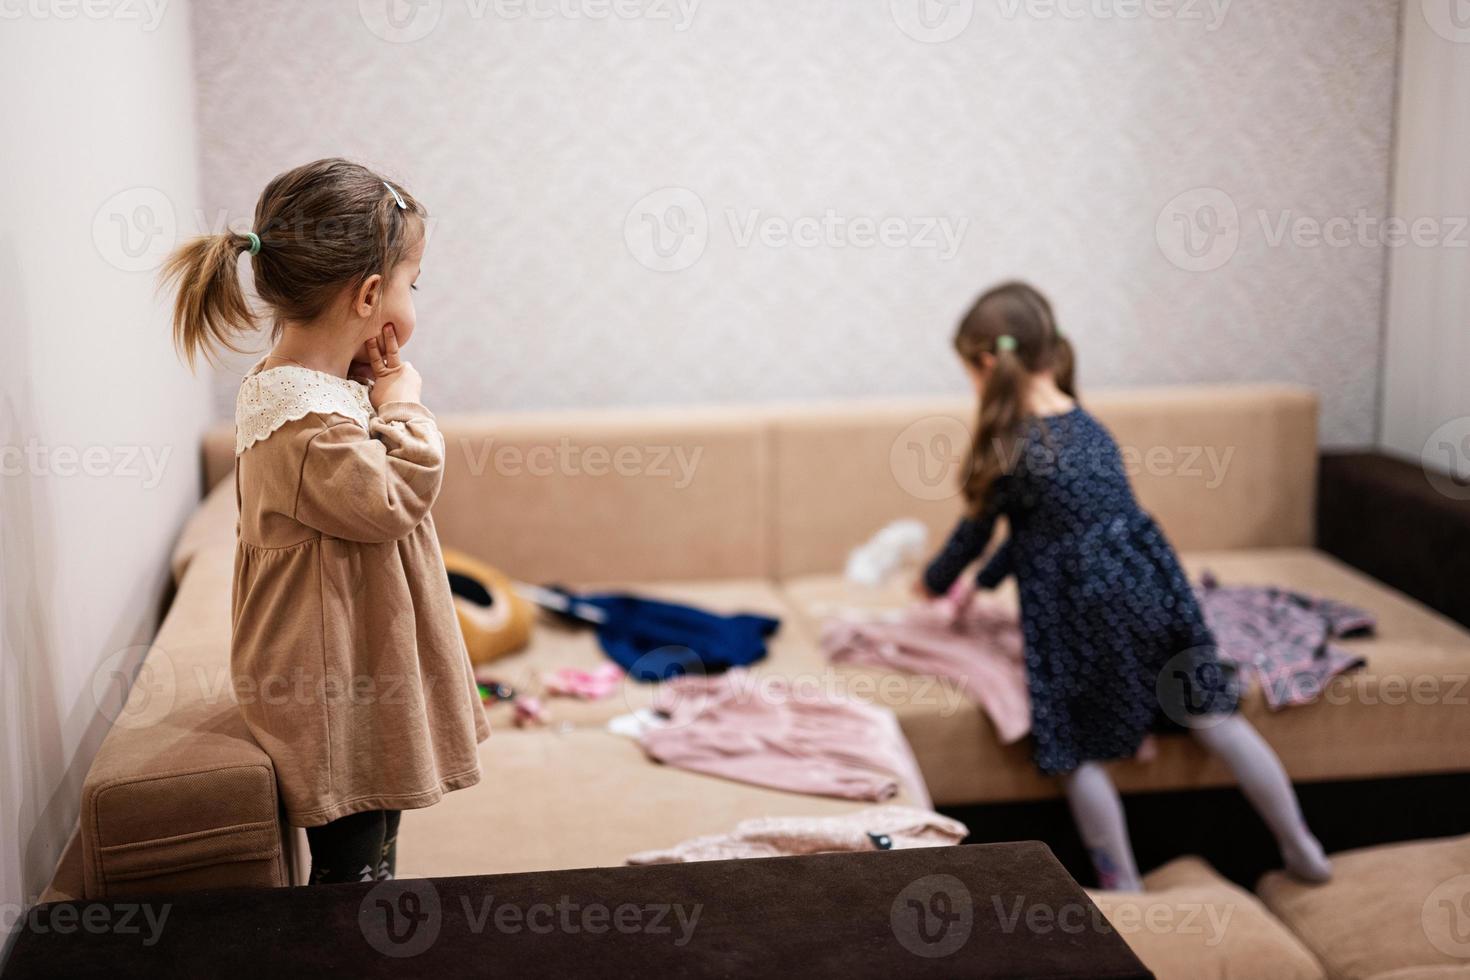 zwei schwestern suchen zu hause auf dem sofa kleider aus dem kleiderschrank aus. foto